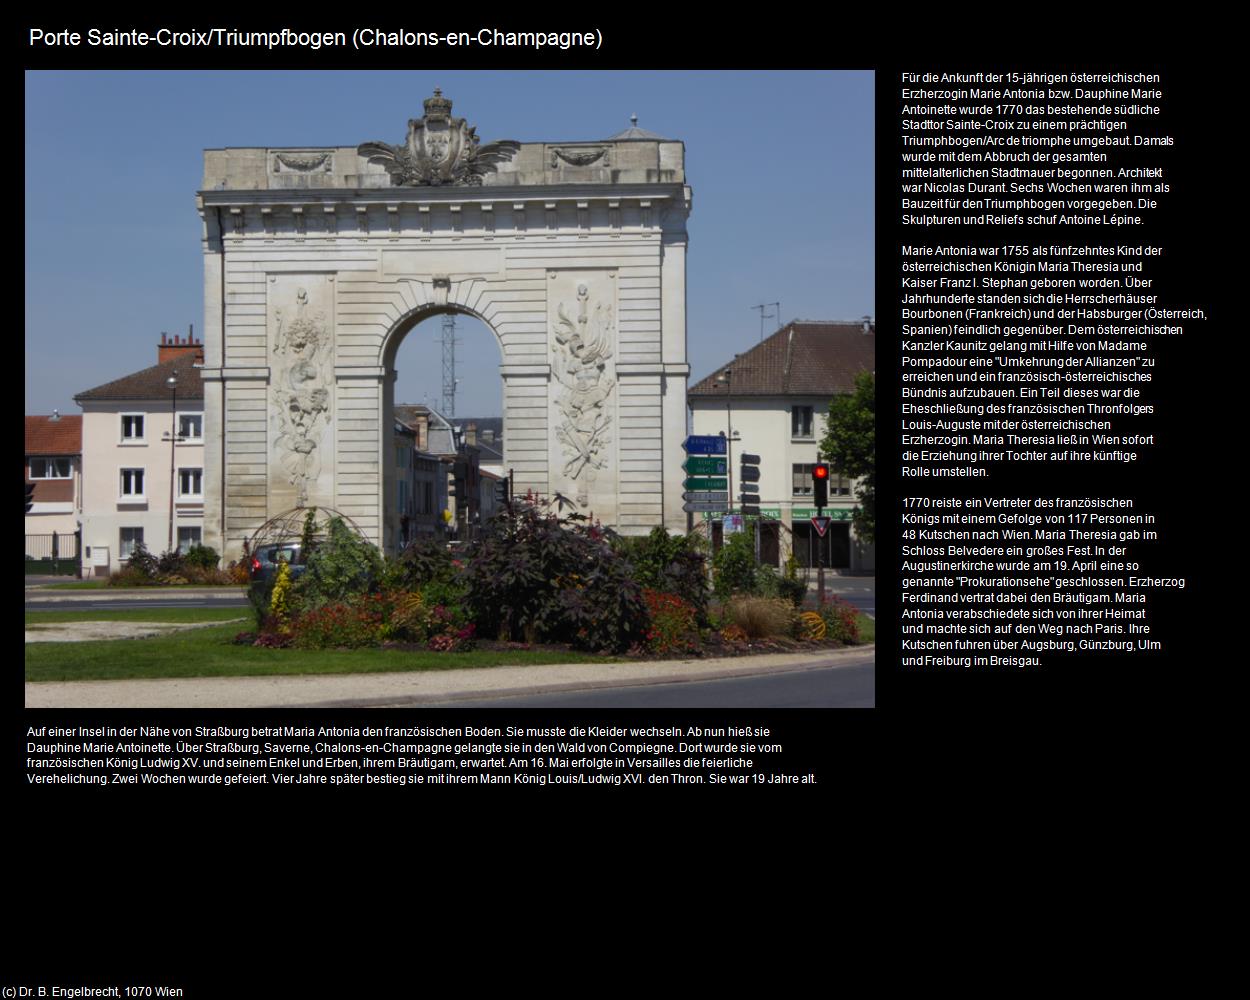 Porte Sainte-Croix (Chalons-en-Champagne (FR-GES)) in Kulturatlas-FRANKREICH